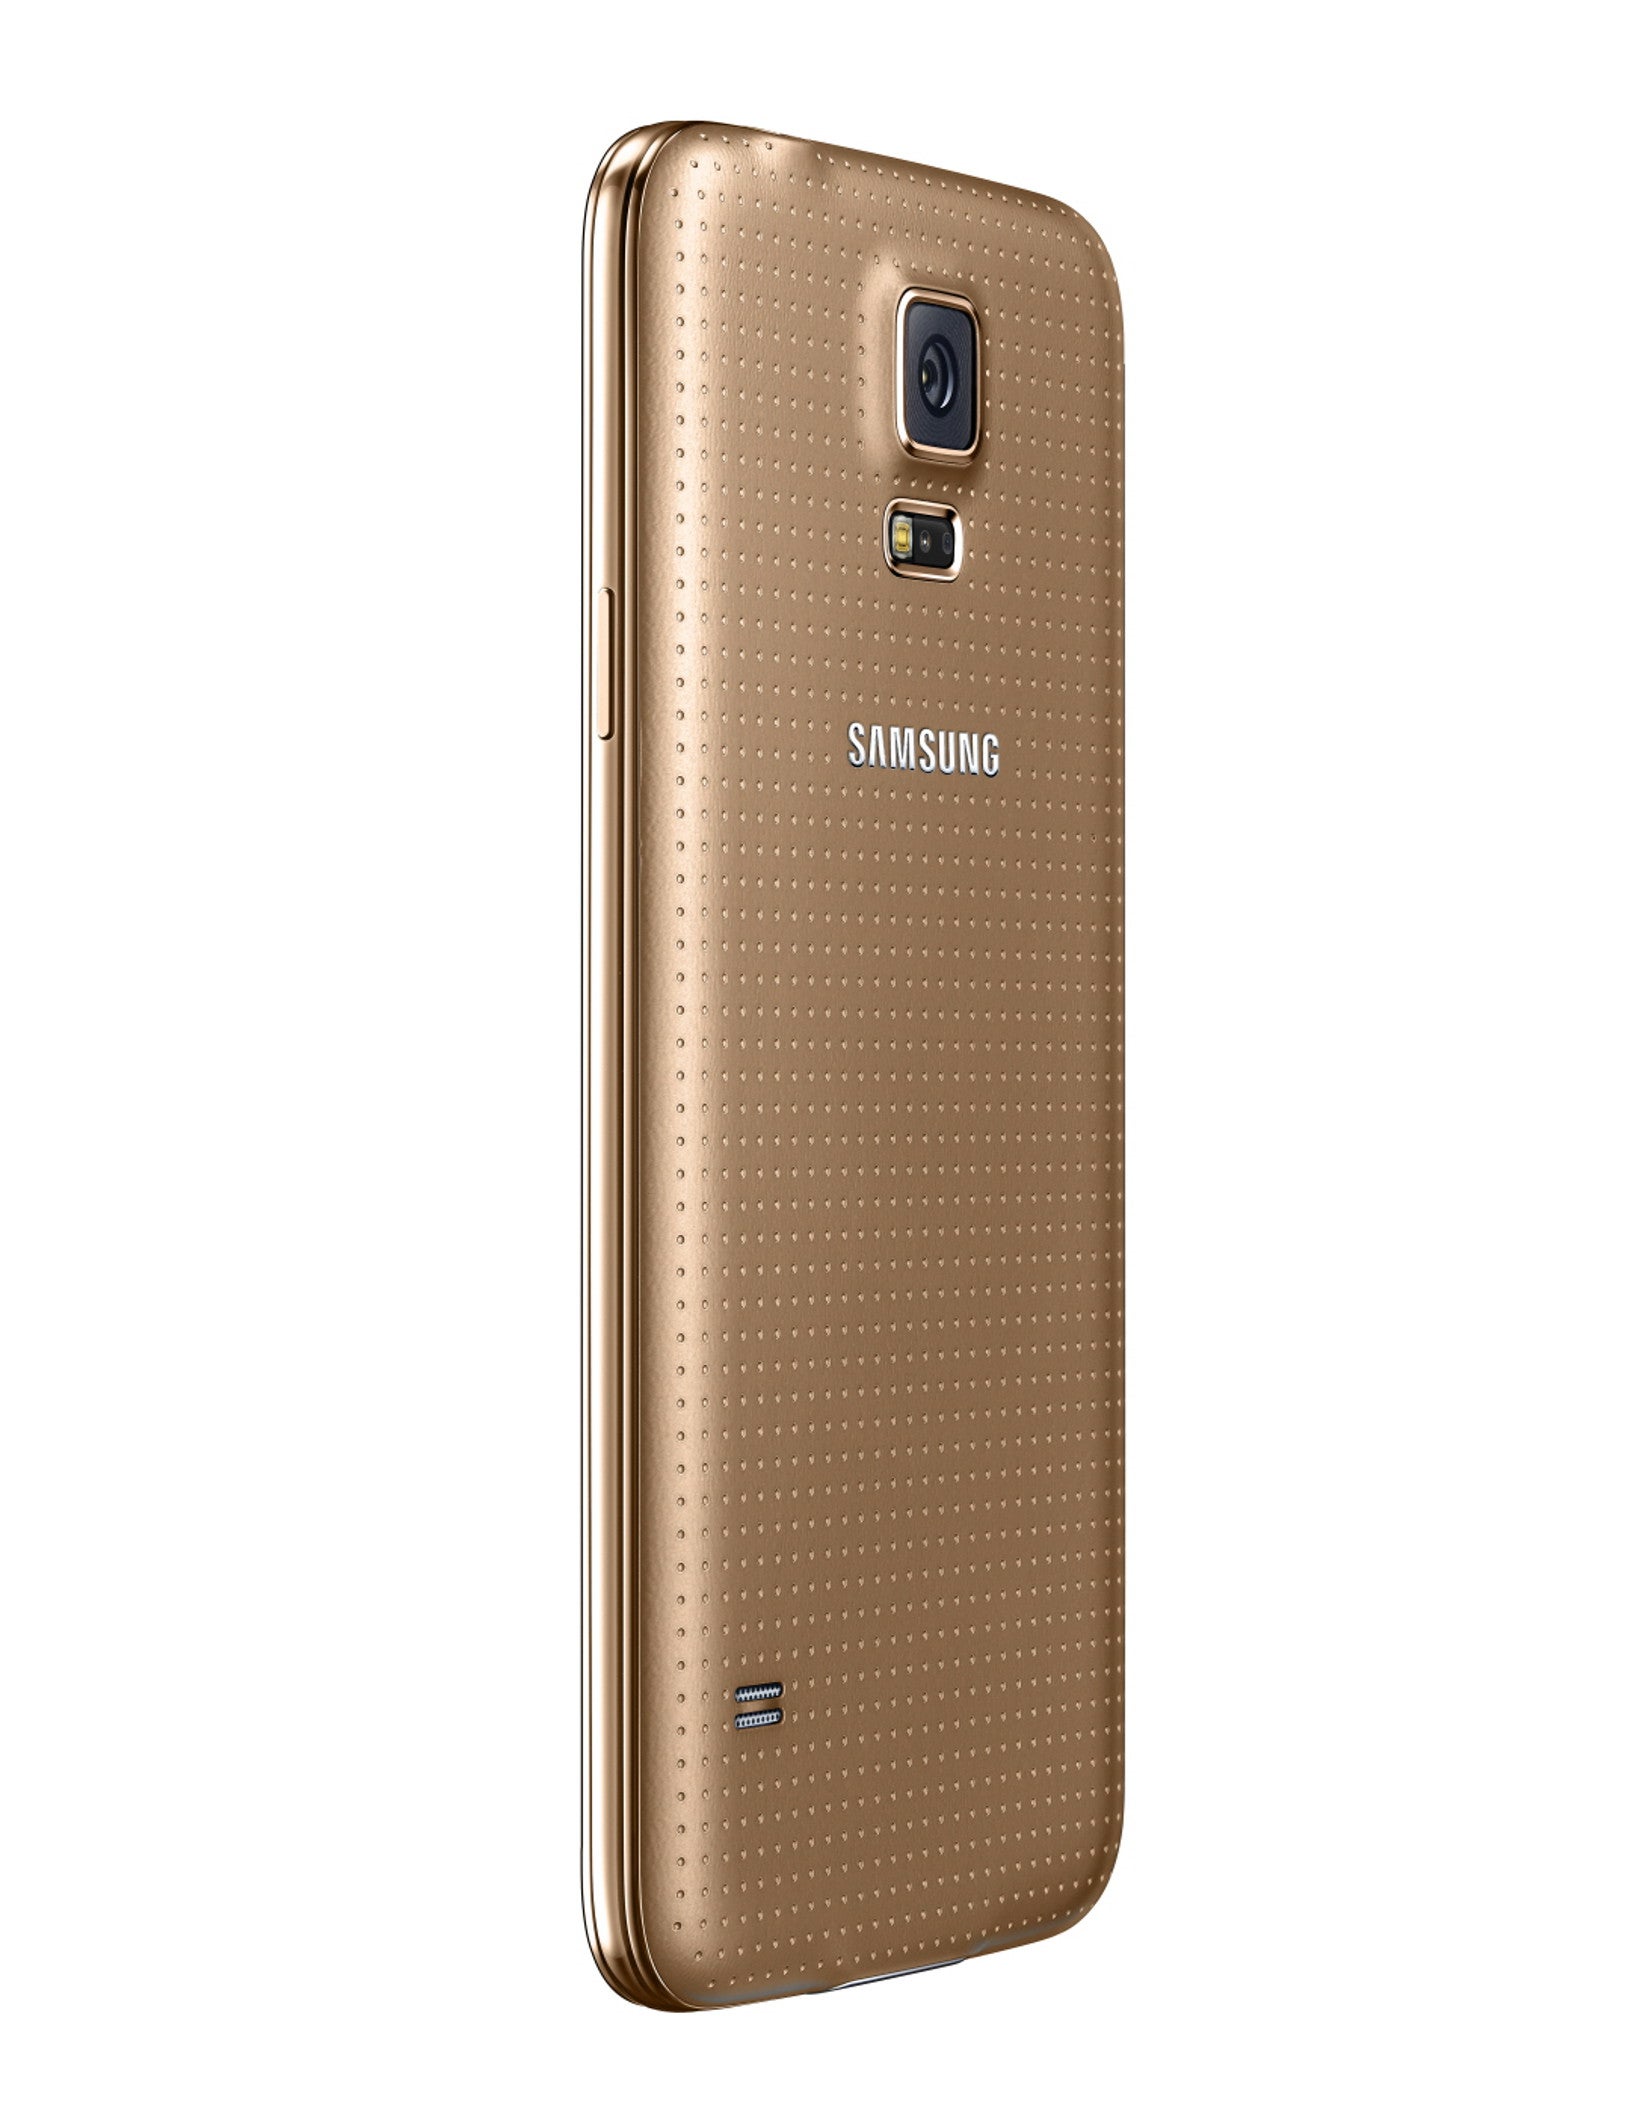 A5 gold. Самсунг SM g900f. Galaxy s5 SM-g900f. Samsung Galaxy s5 Duos SM-g900fd. Samsung Galaxy s5 Gold.